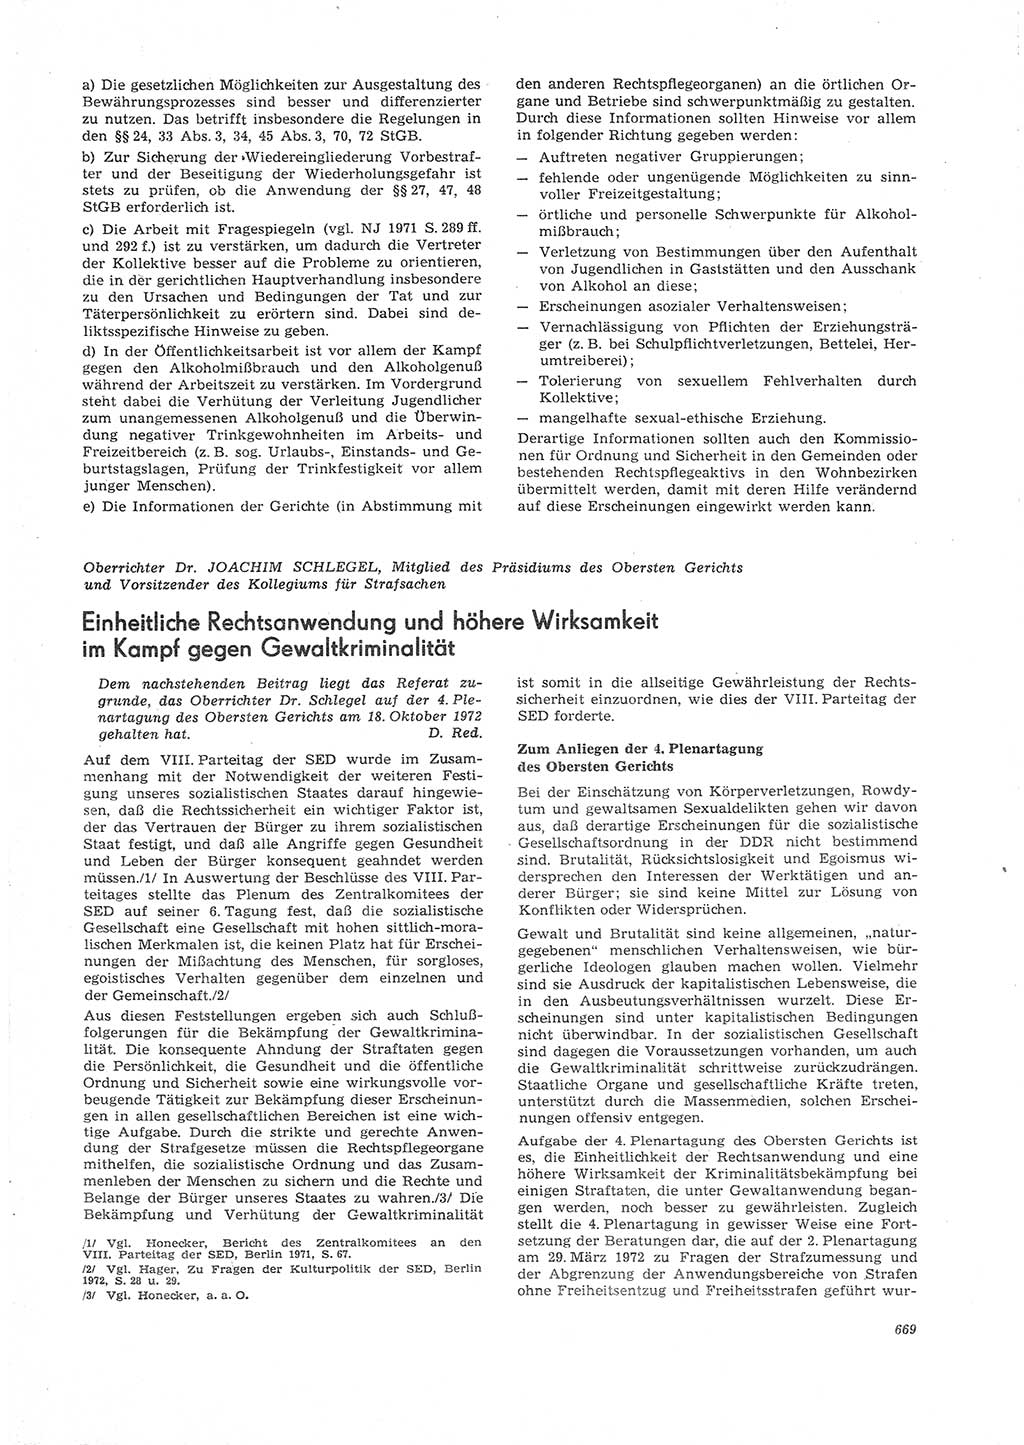 Neue Justiz (NJ), Zeitschrift für Recht und Rechtswissenschaft [Deutsche Demokratische Republik (DDR)], 26. Jahrgang 1972, Seite 669 (NJ DDR 1972, S. 669)